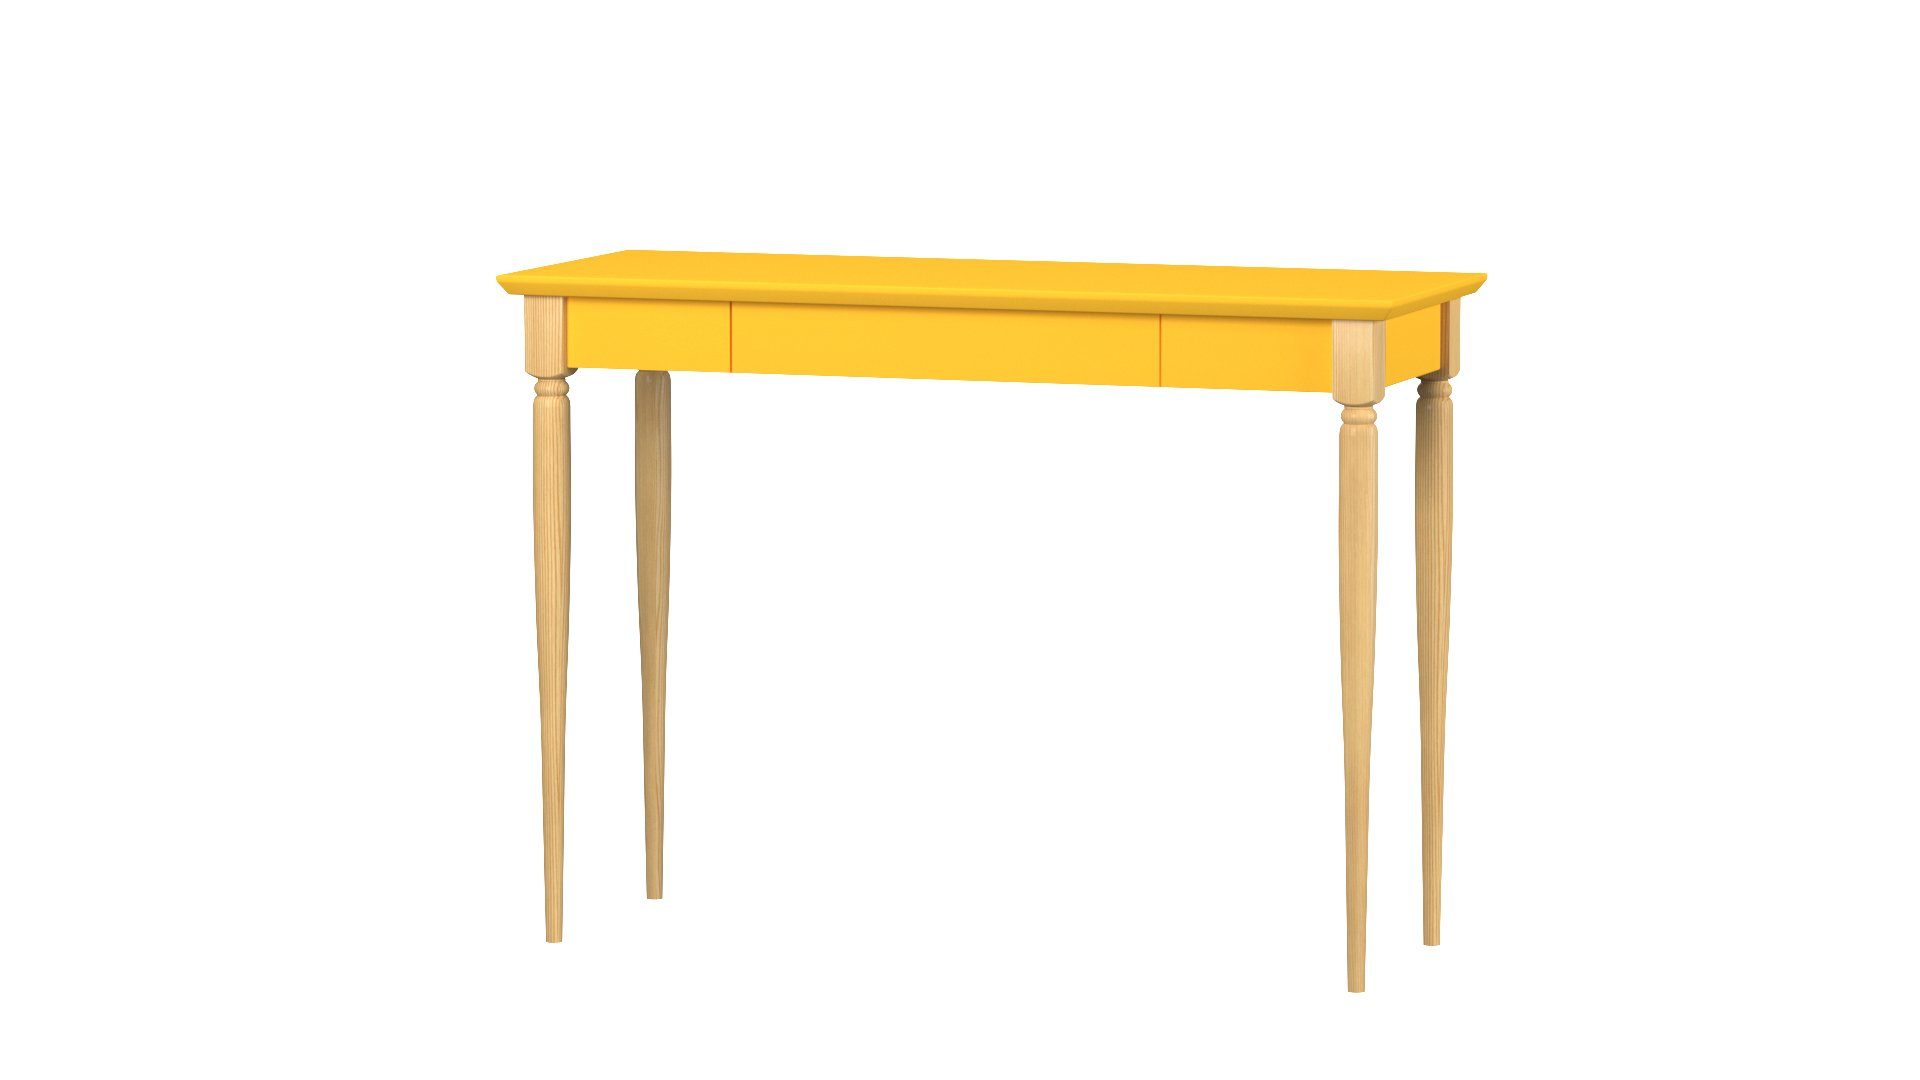 Siblo Schreibtisch Kinderschreibtisch Gelb Jugendzimmer Louis Design mit Kinderzimmer - - mit Louis minimalistisches Buchenholz - Schublade - - Moderner Schublade) (Kinderschreibtisch - Schreibtisch MDF-Platte